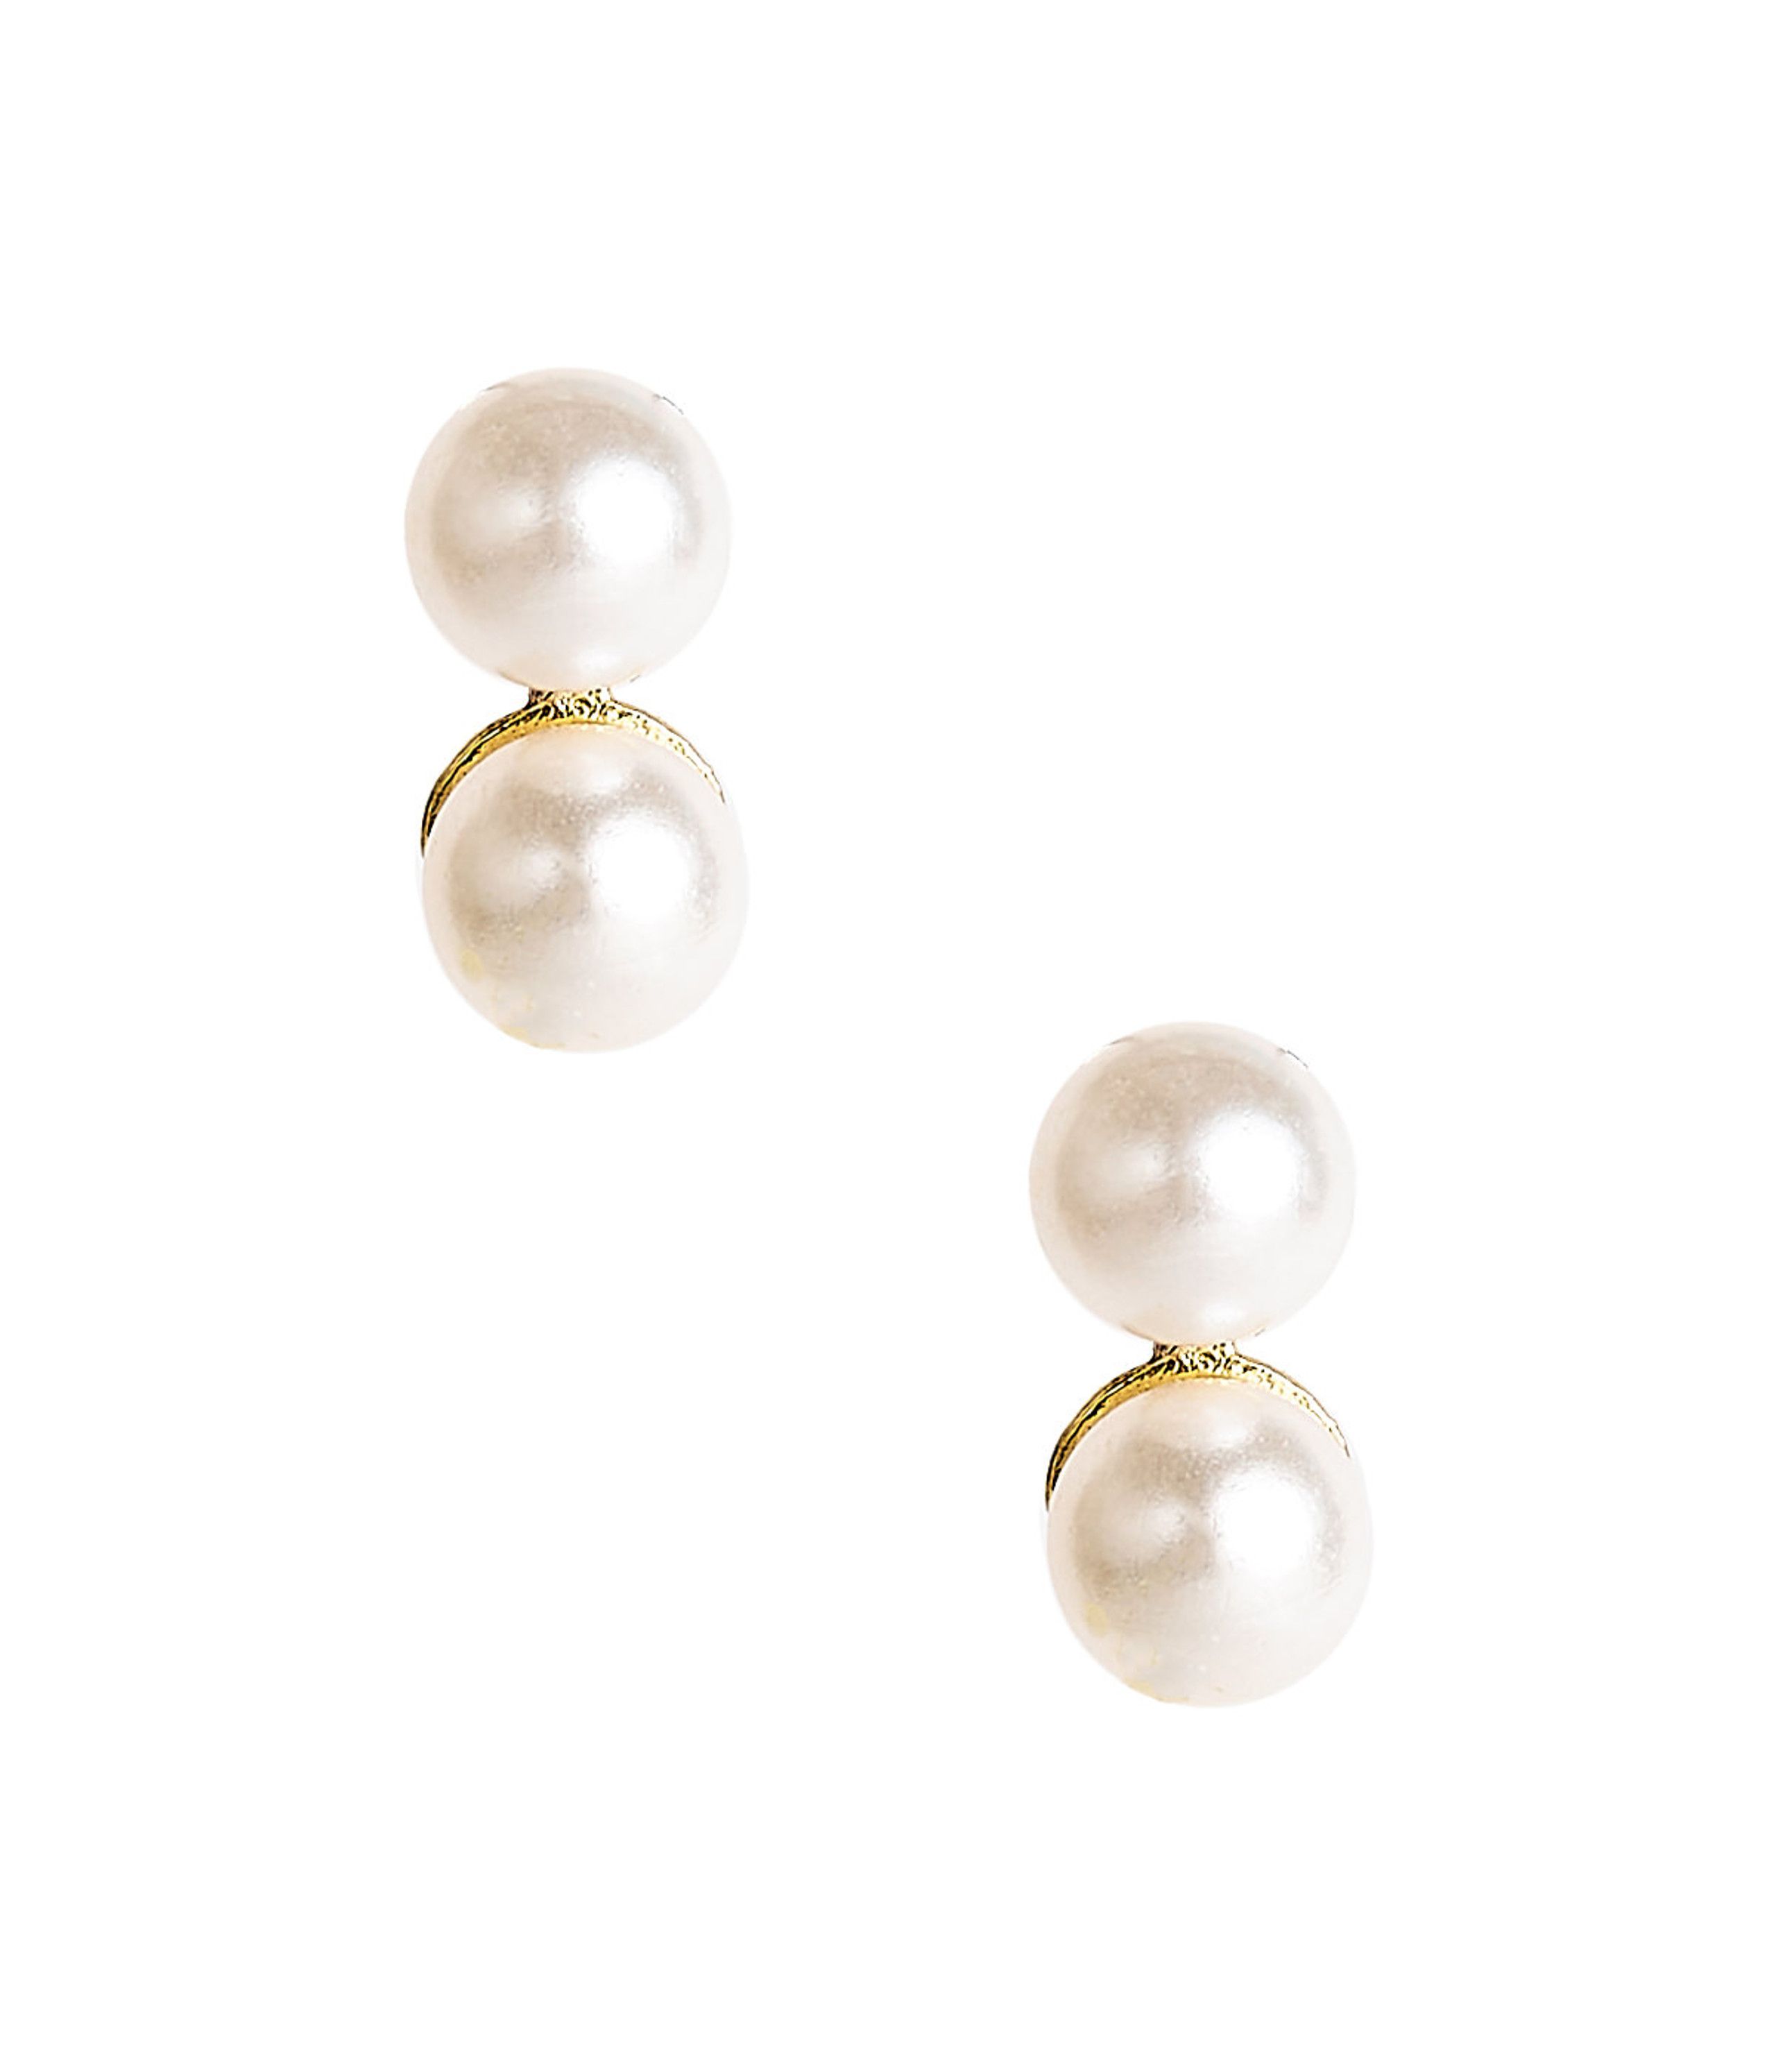 Belle - Double Pearl earrings Pre Order | Lisi Lerch Inc